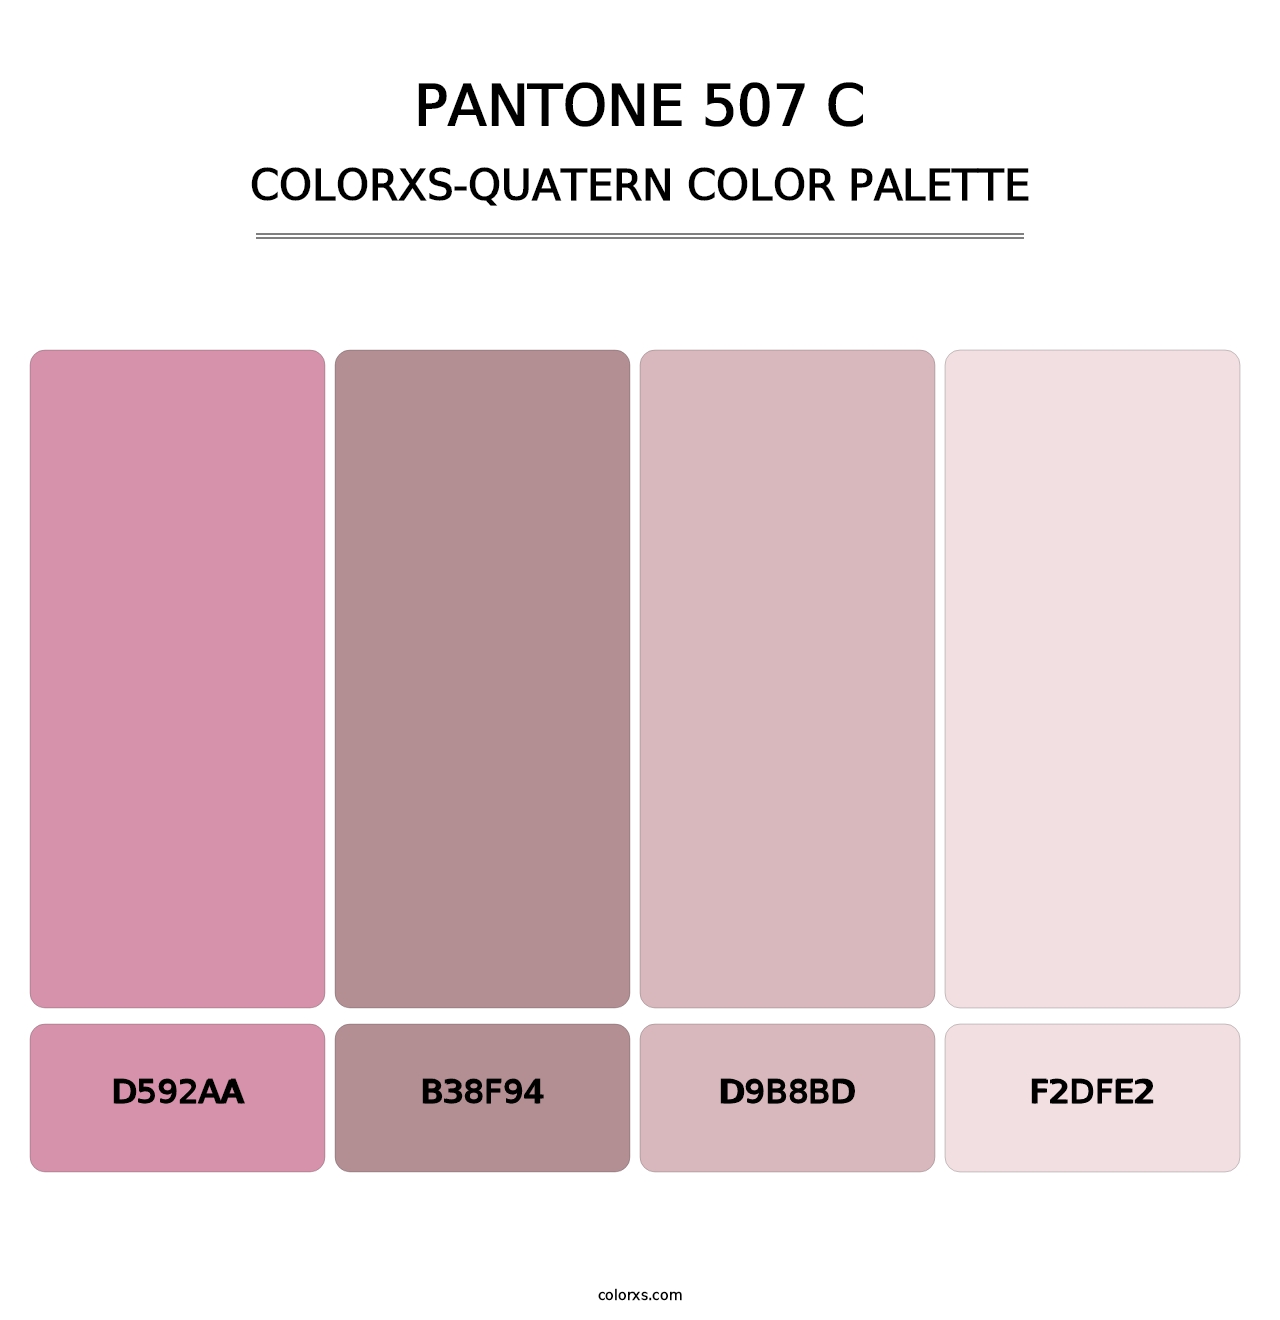 PANTONE 507 C - Colorxs Quatern Palette